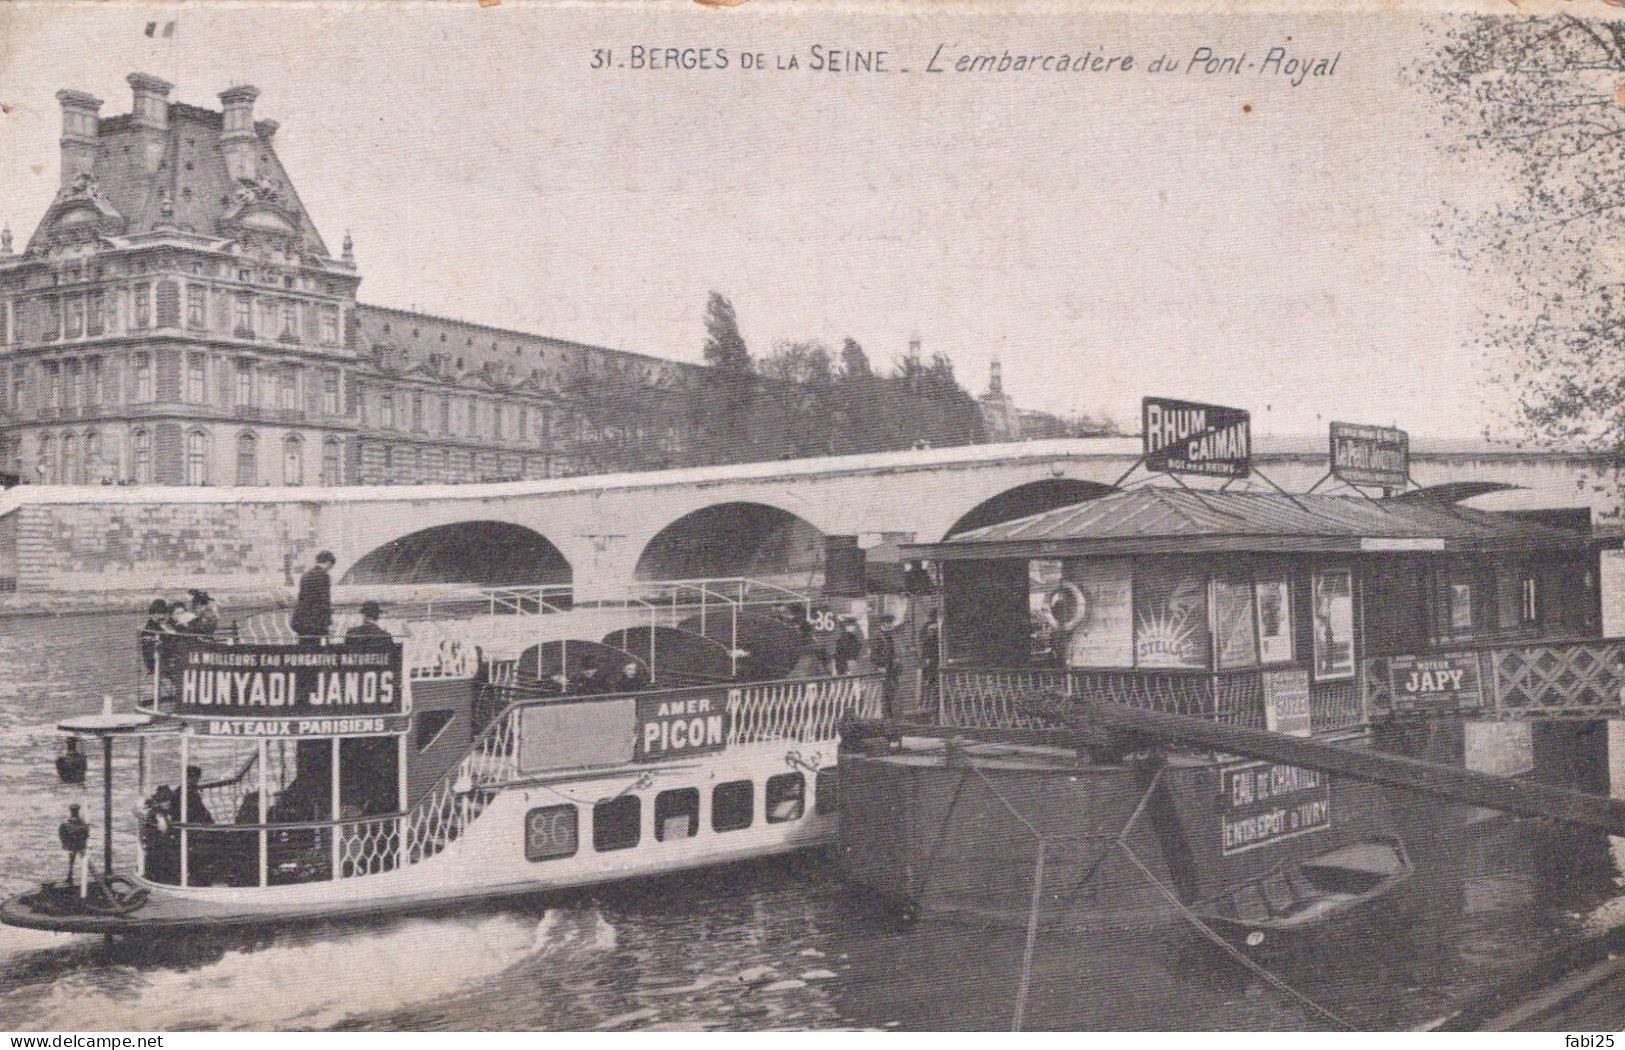 BERGES DE LA SEINE L EMBARCADERE DU PONT ROYAL - The River Seine And Its Banks